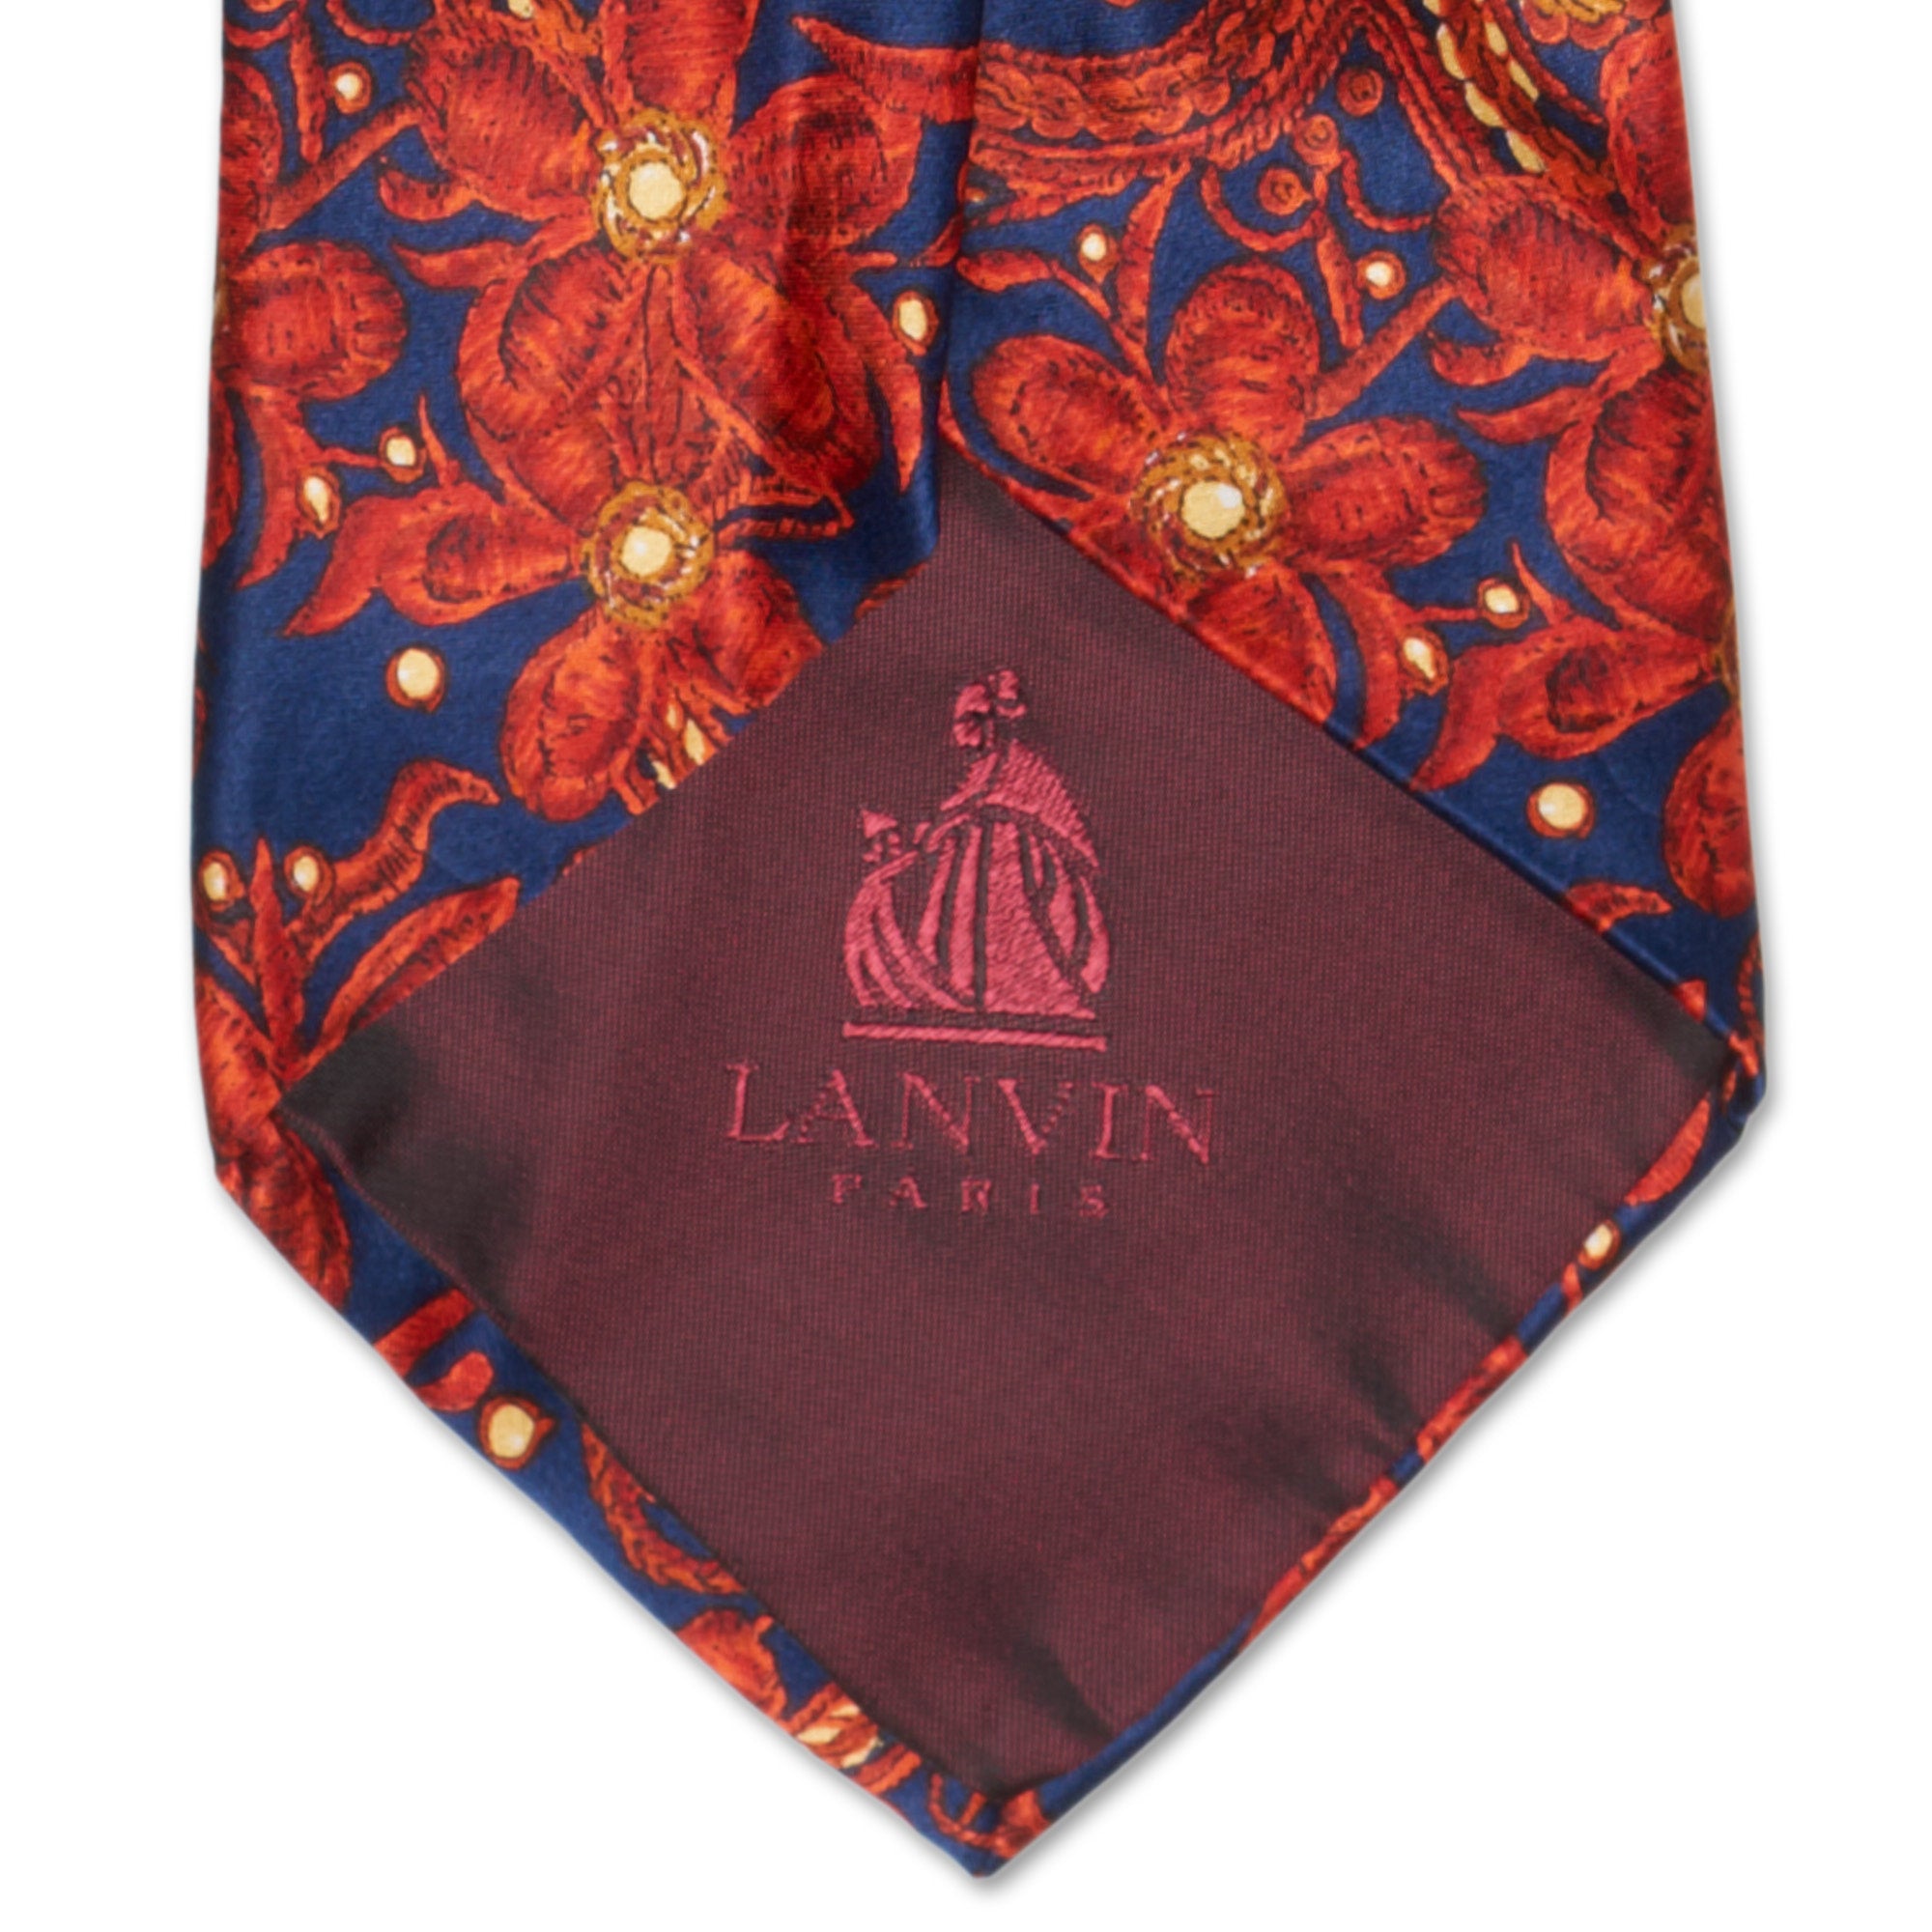 LANVIN Paris Handmade Red Floral Design Silk Tie